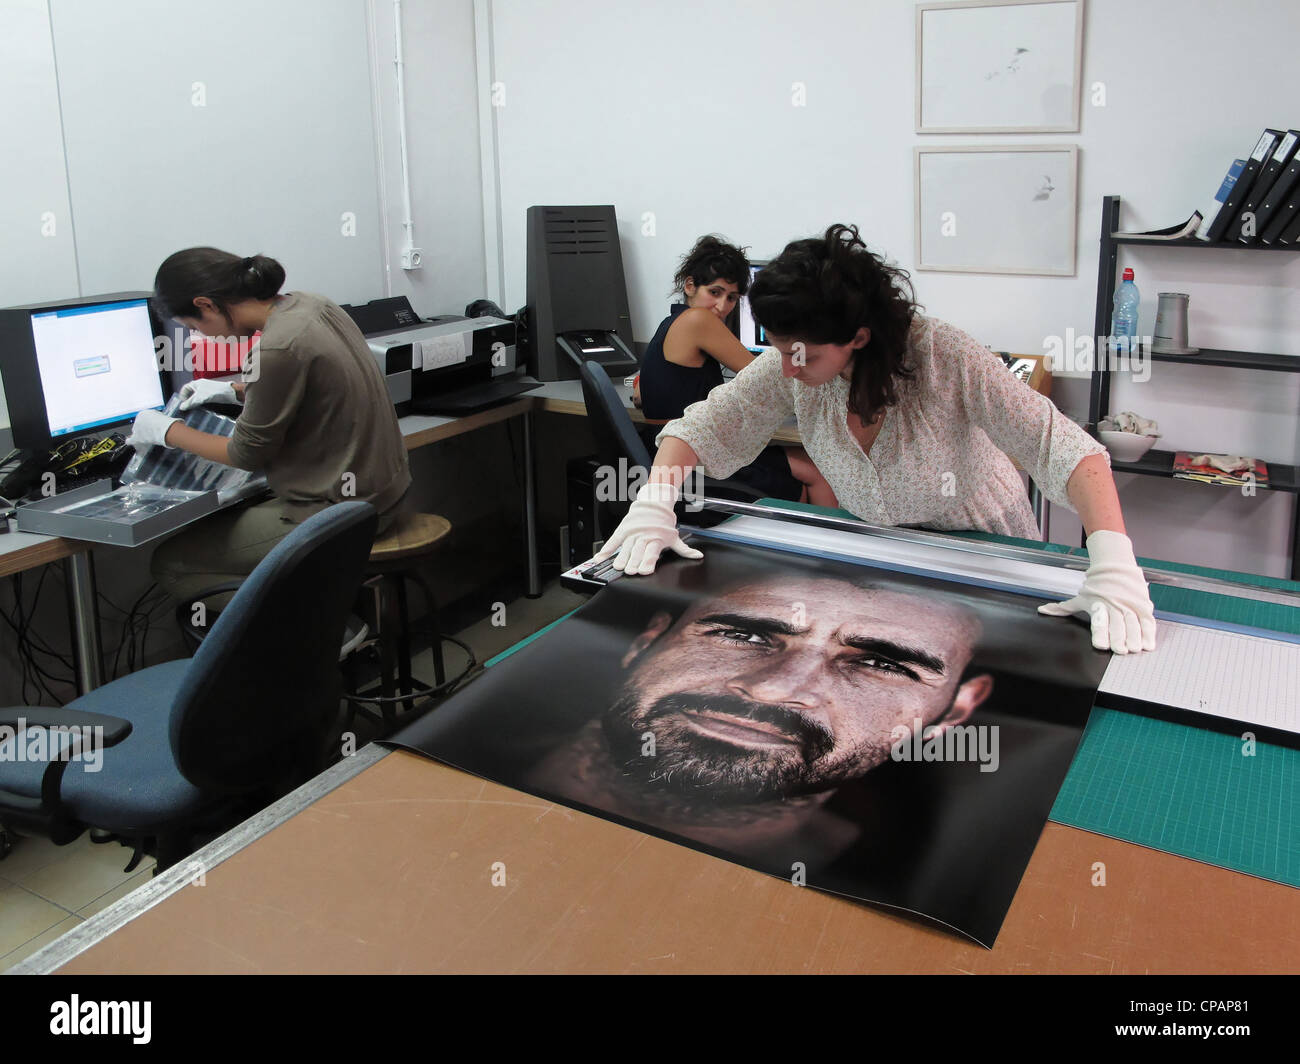 Étudiant en photographie de la manipulation d'un gros caractères sur le laboratoire numérique de l'école pour la photographie ou Naggar Musrara art school dans l'ouest de Jérusalem Israël Banque D'Images